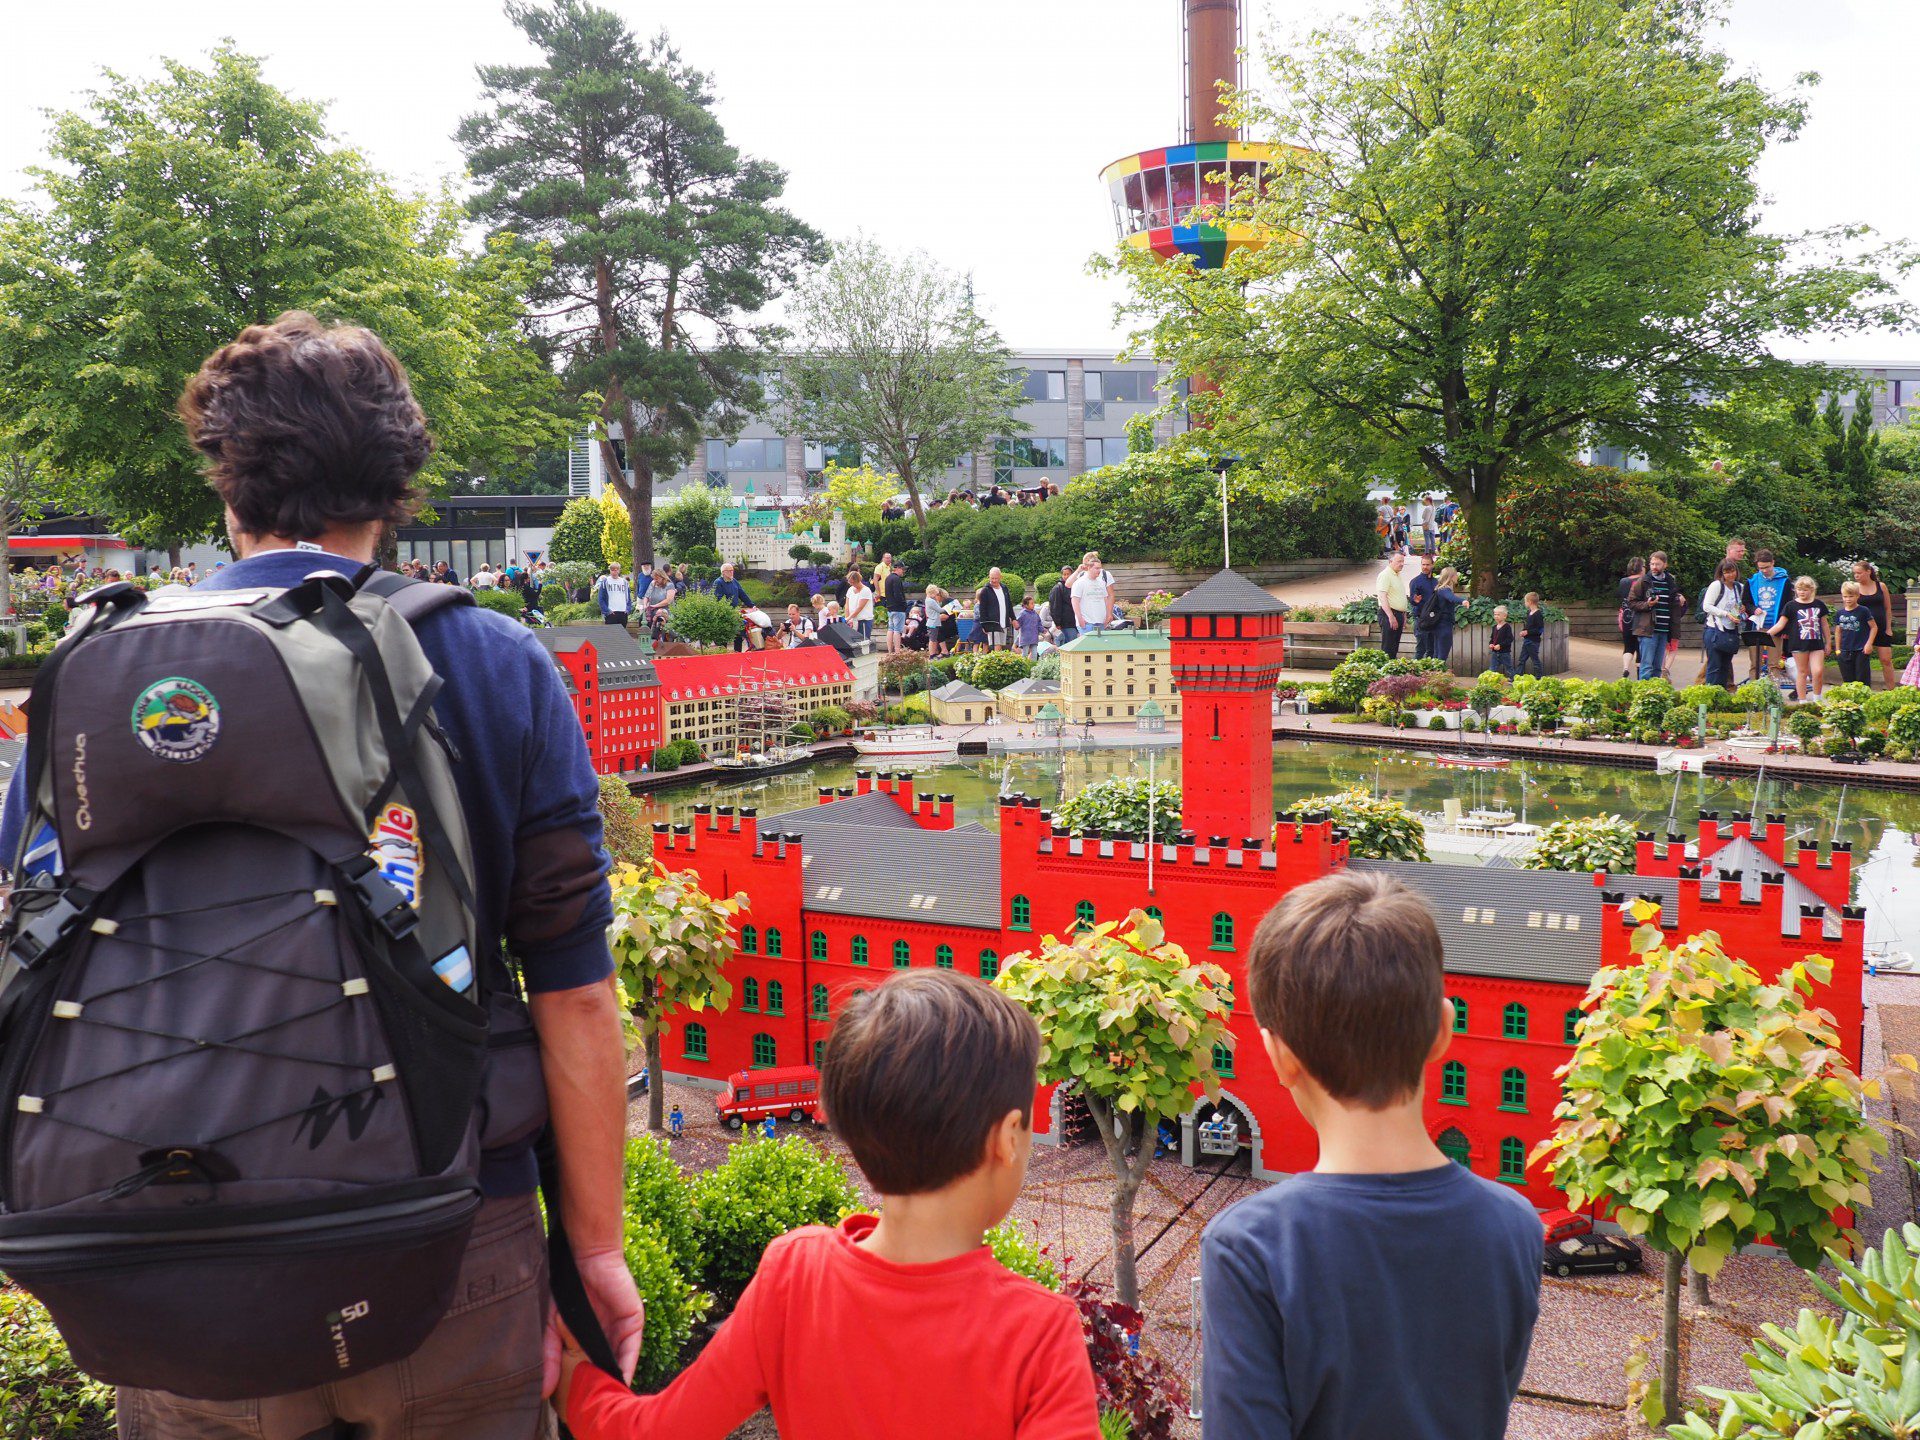 Guía práctica para disfrutar de Legoland con niños